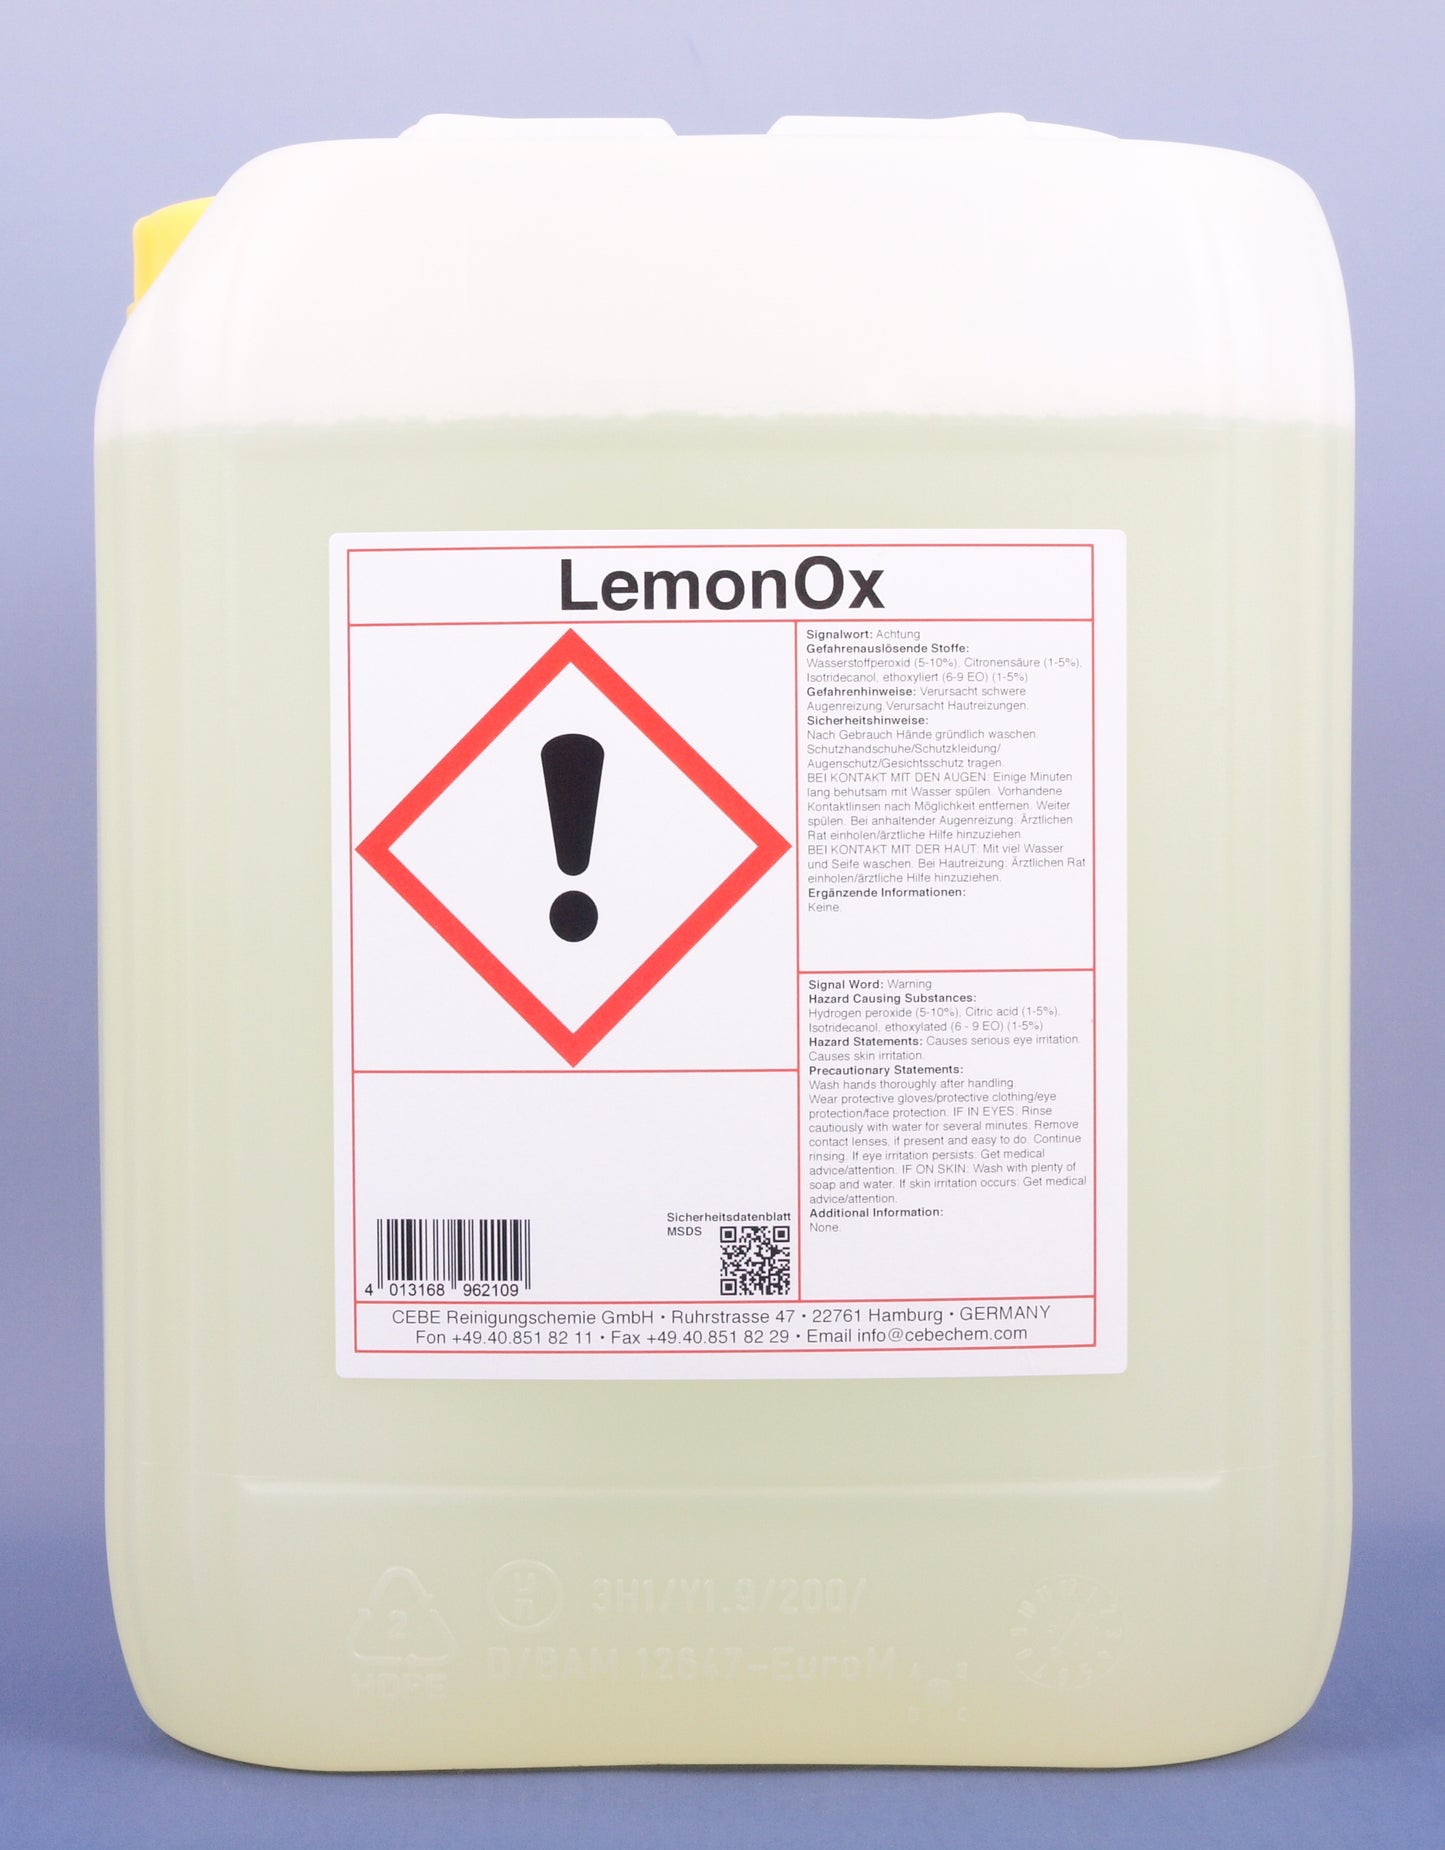 LemonOx